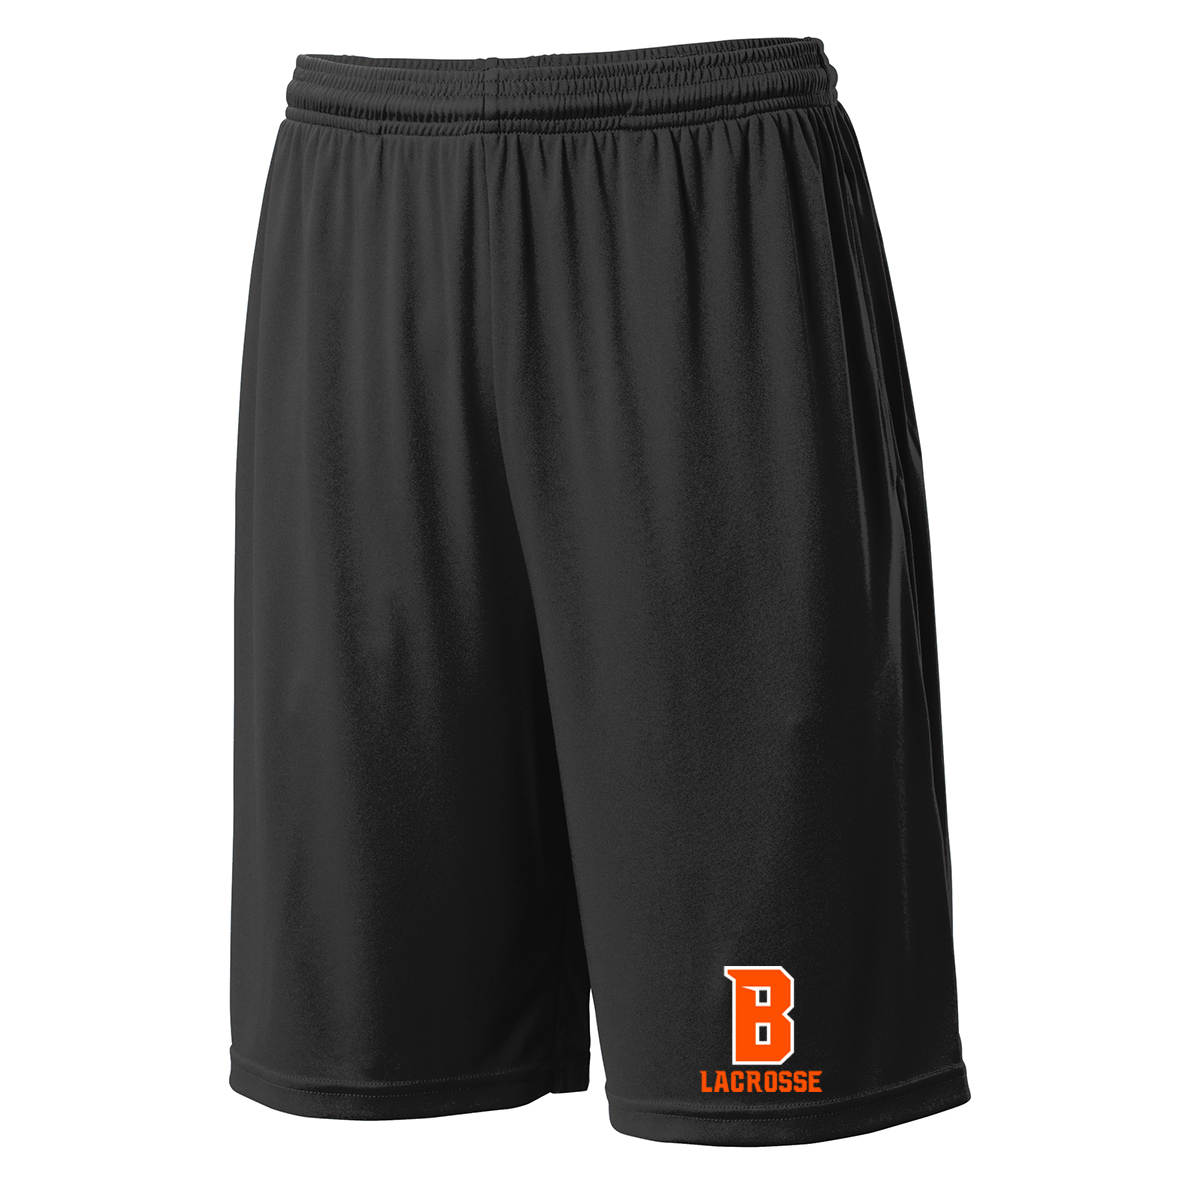 Babylon Lacrosse Shorts